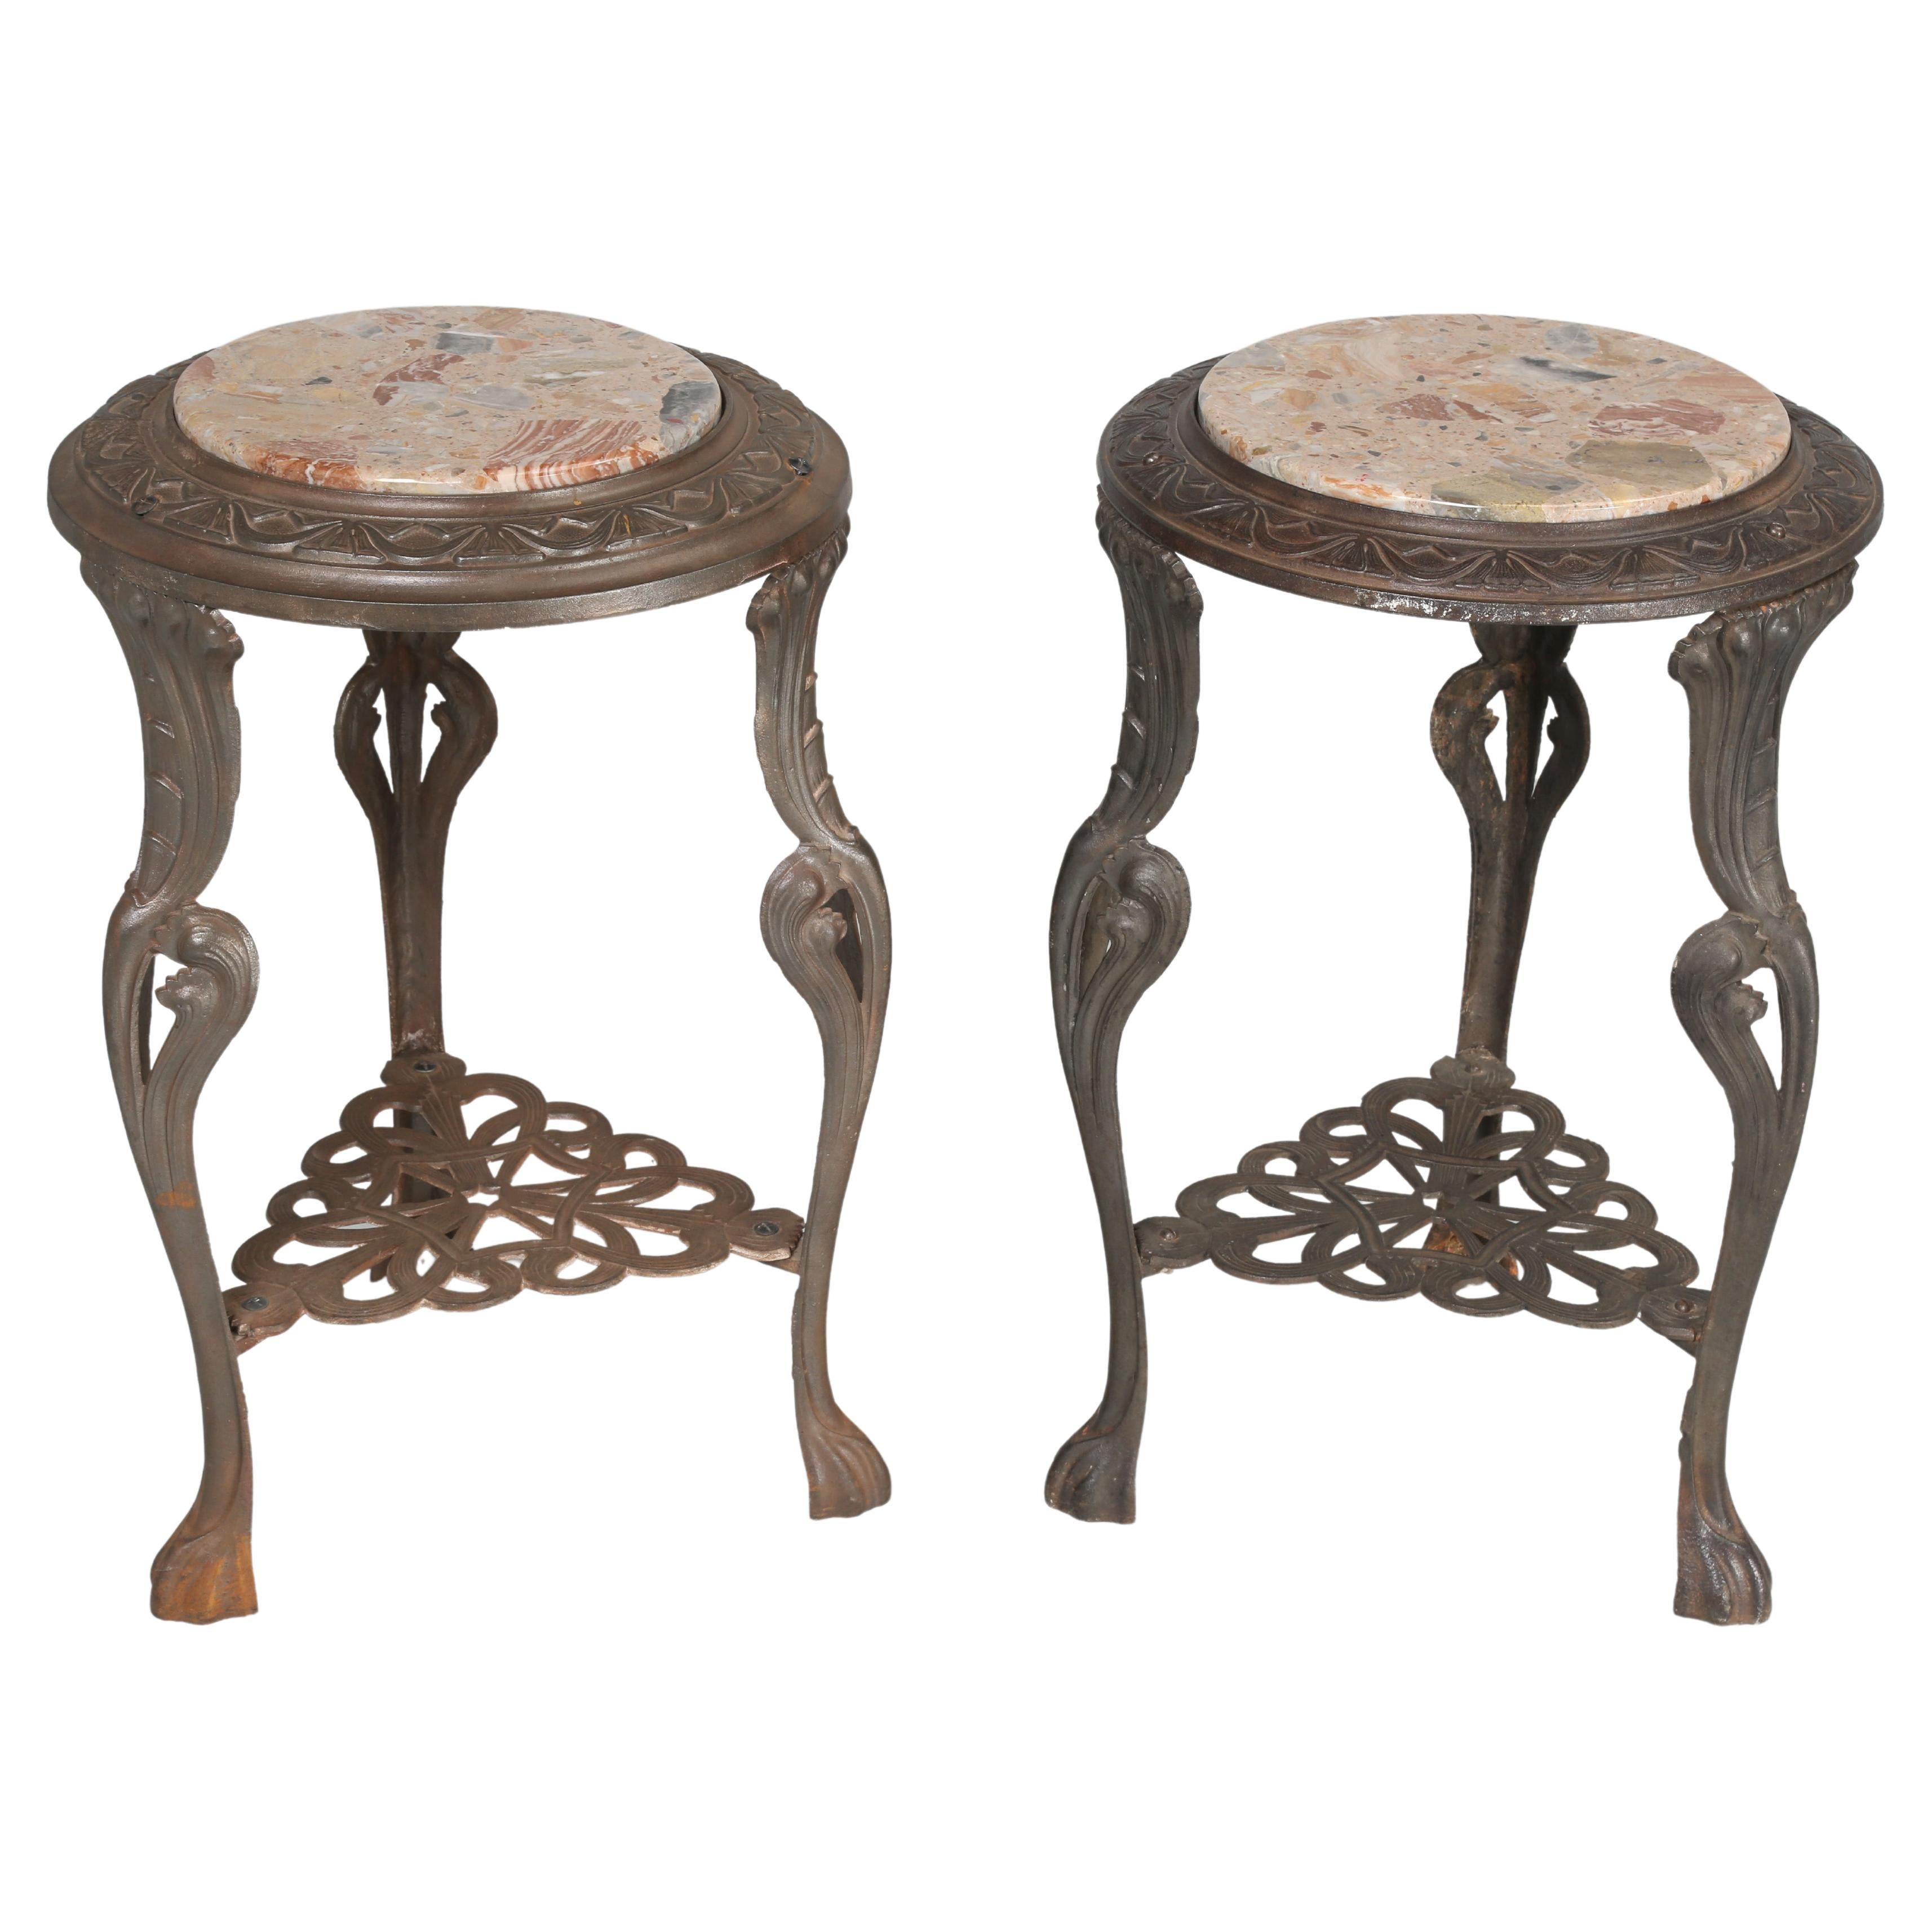 Near Pair of French Art Nouveau Guéridon Cast Iron Tables with Stone Tops (Paire de tables en fonte avec plateaux en pierre)